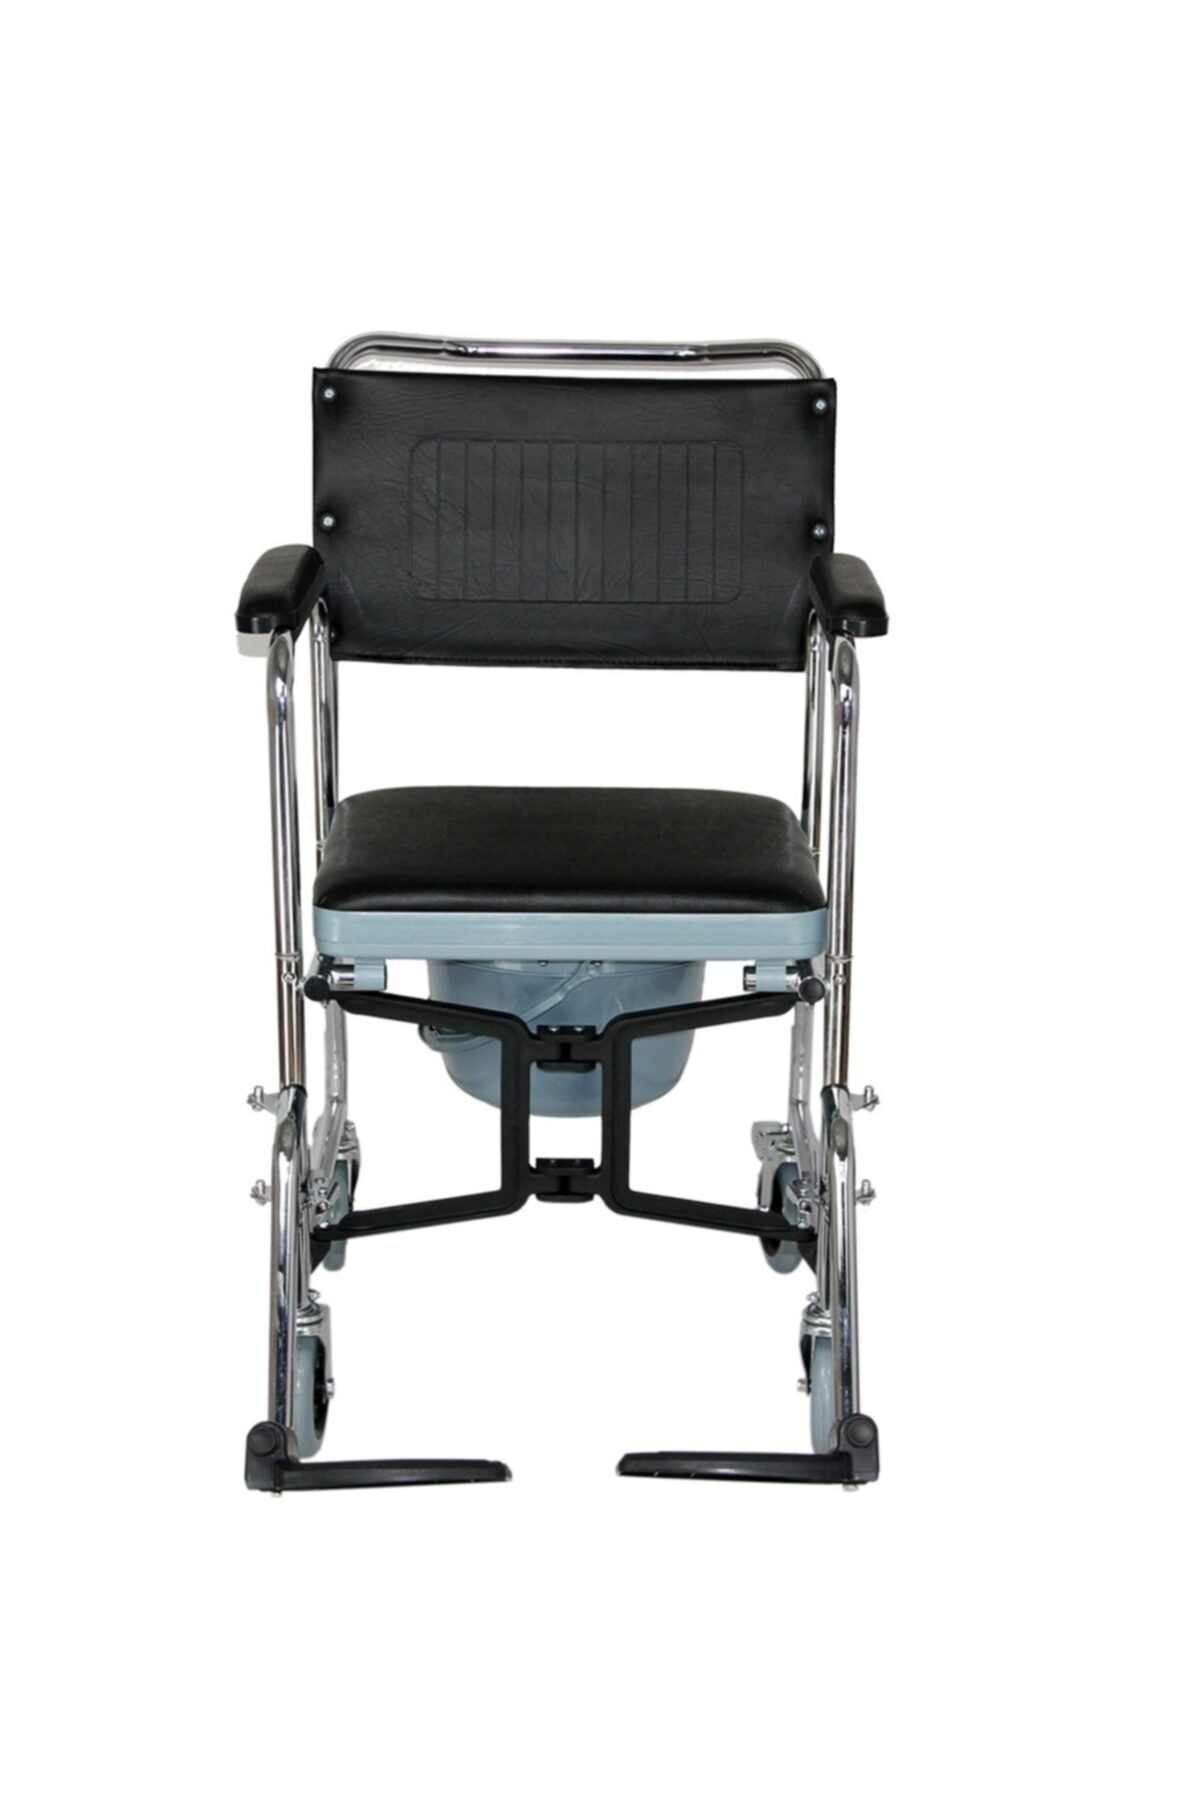 POYLİN P689 Banyo Tuvalet Duş Wc Koridor Ev Içi Hasta Yaşlı Engelli Tekerlekli Sandalyesi